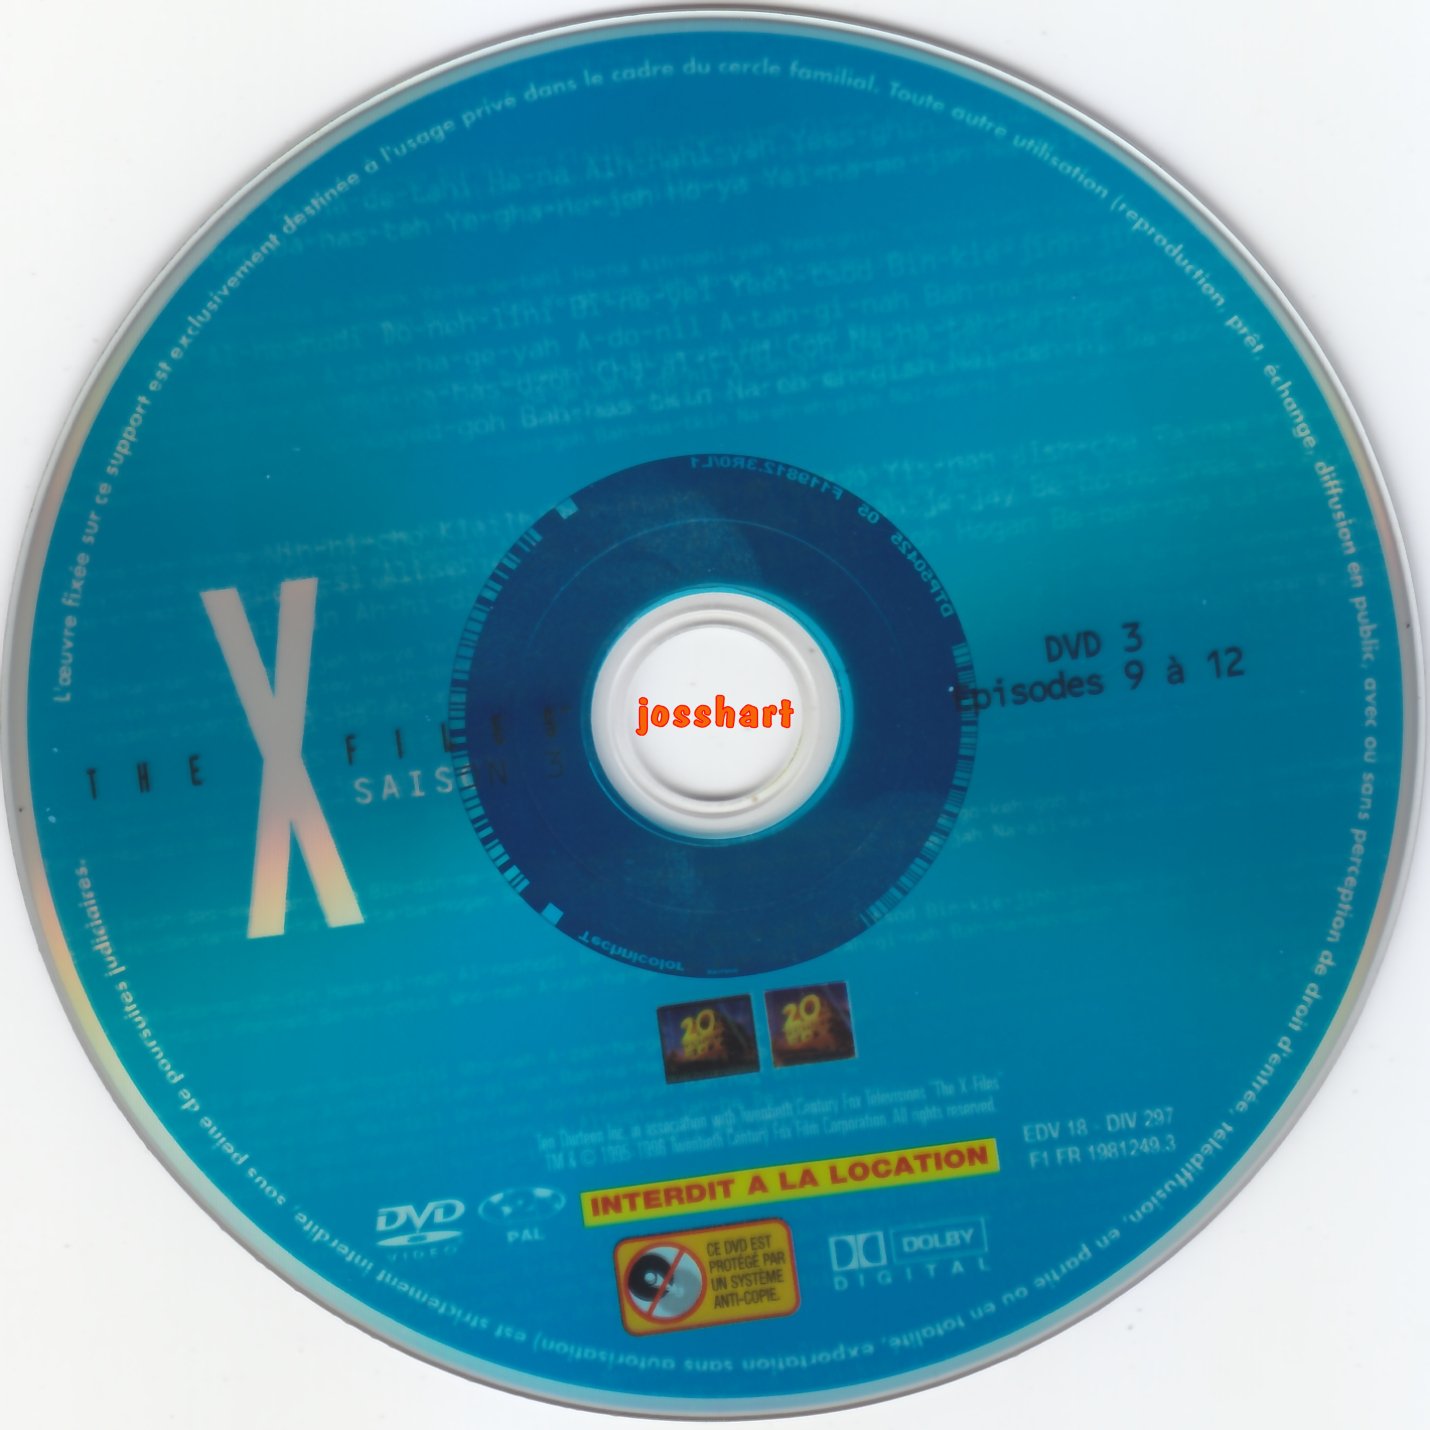 The X Files Saison 3 DVD 3 v2